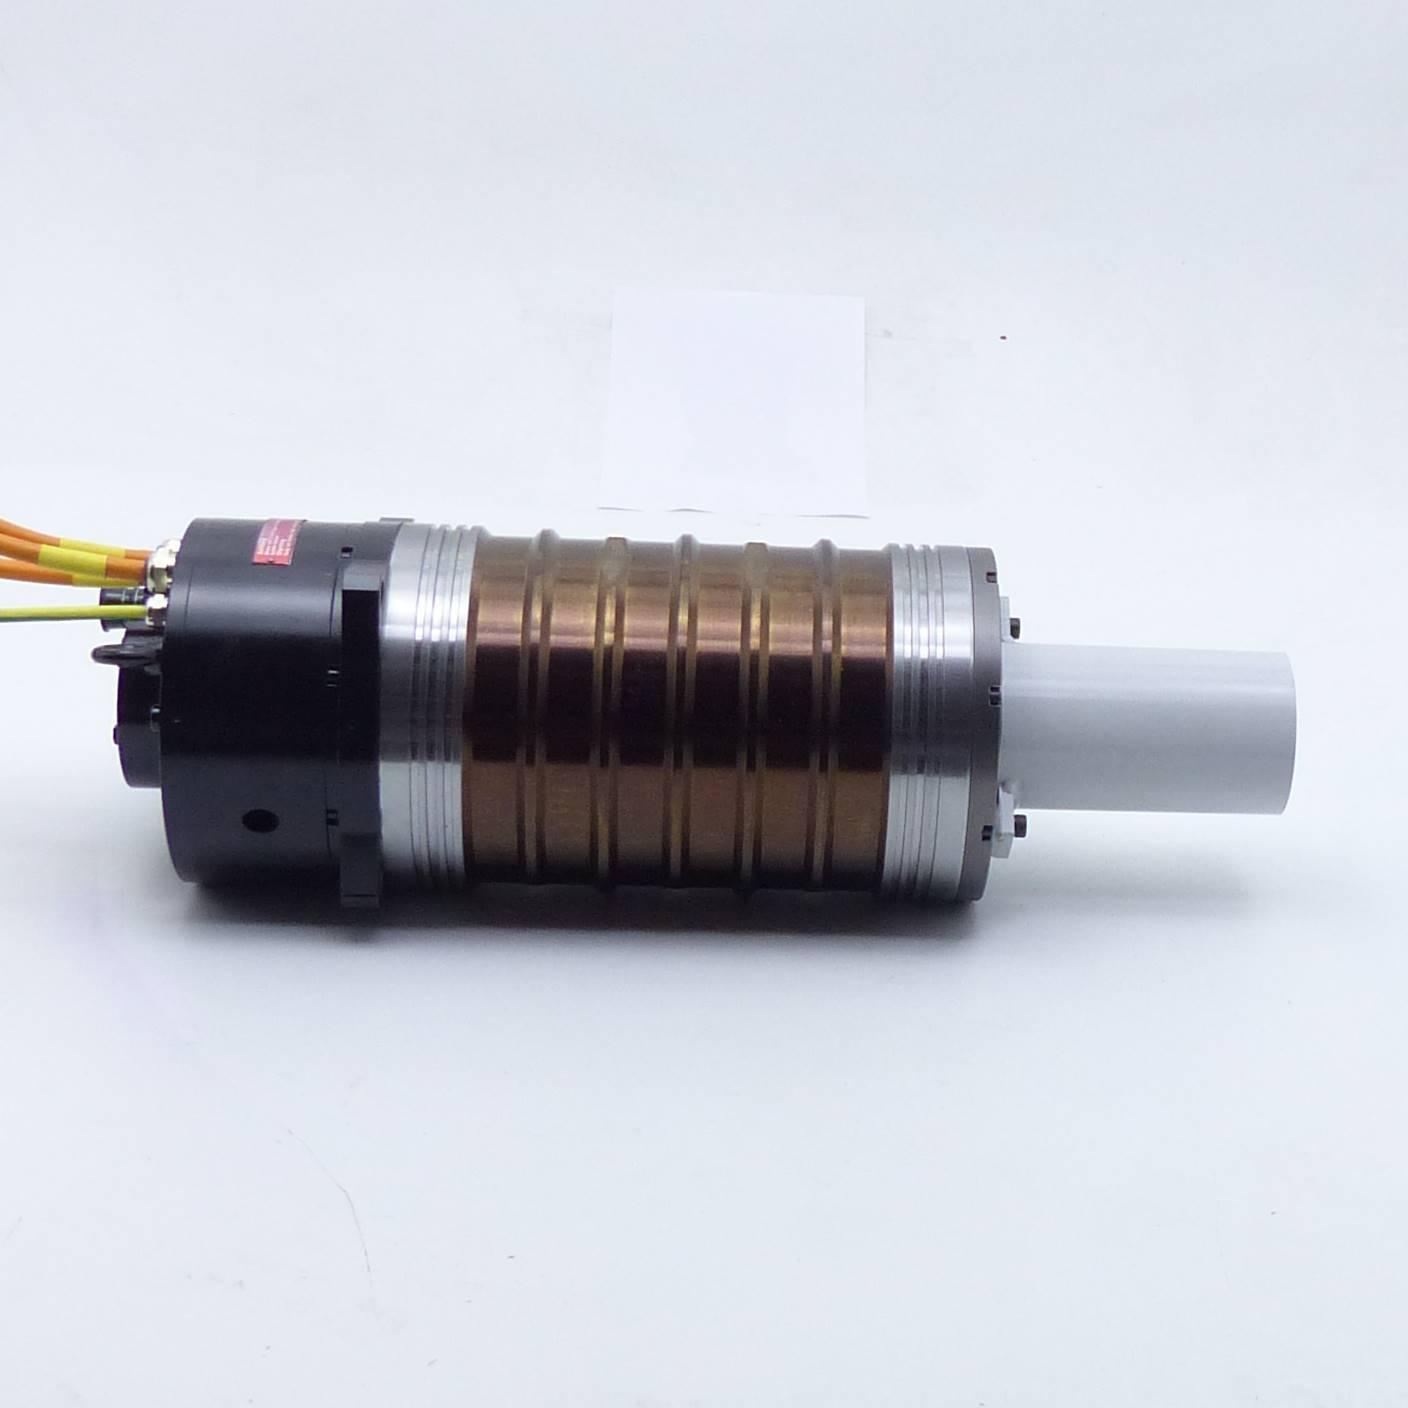 Produktfoto 5 von KESSLER Spindel / Hochfrequenzmotor